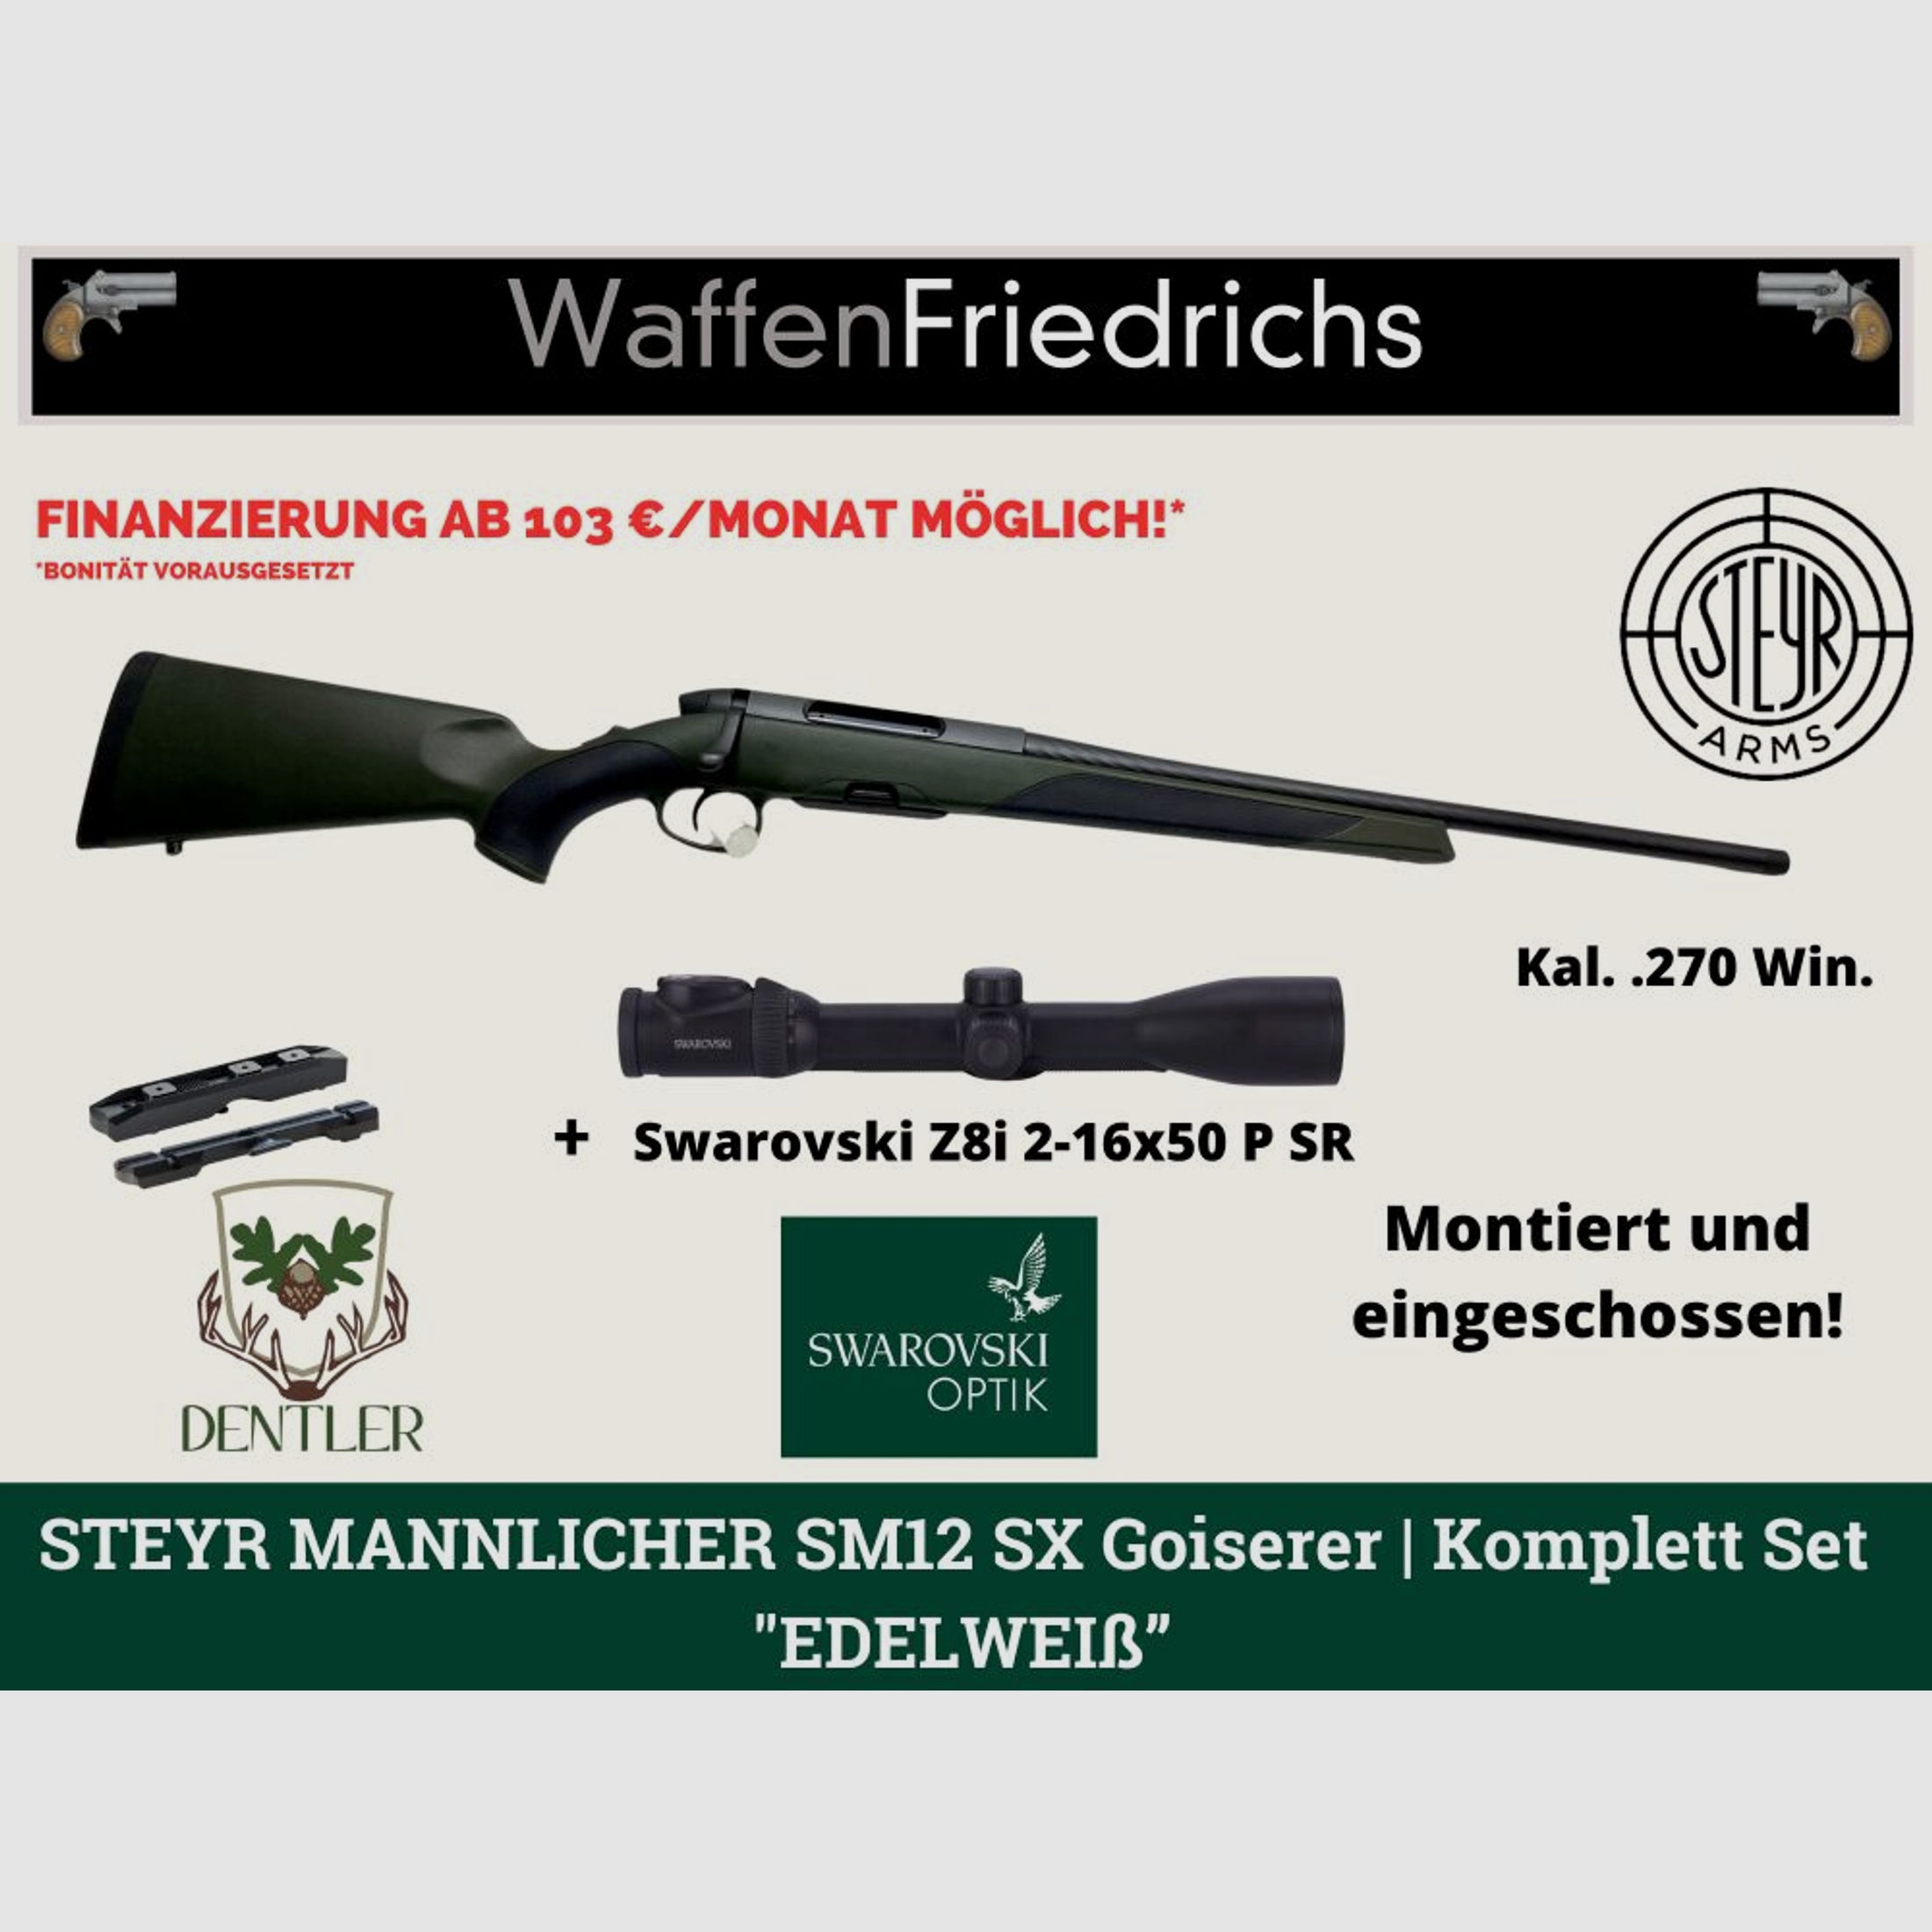 STEYR MANNLICHER	 SM 12 SX Goiserer | Komplettangebot "Edelweiß" - Waffen Friedrichs